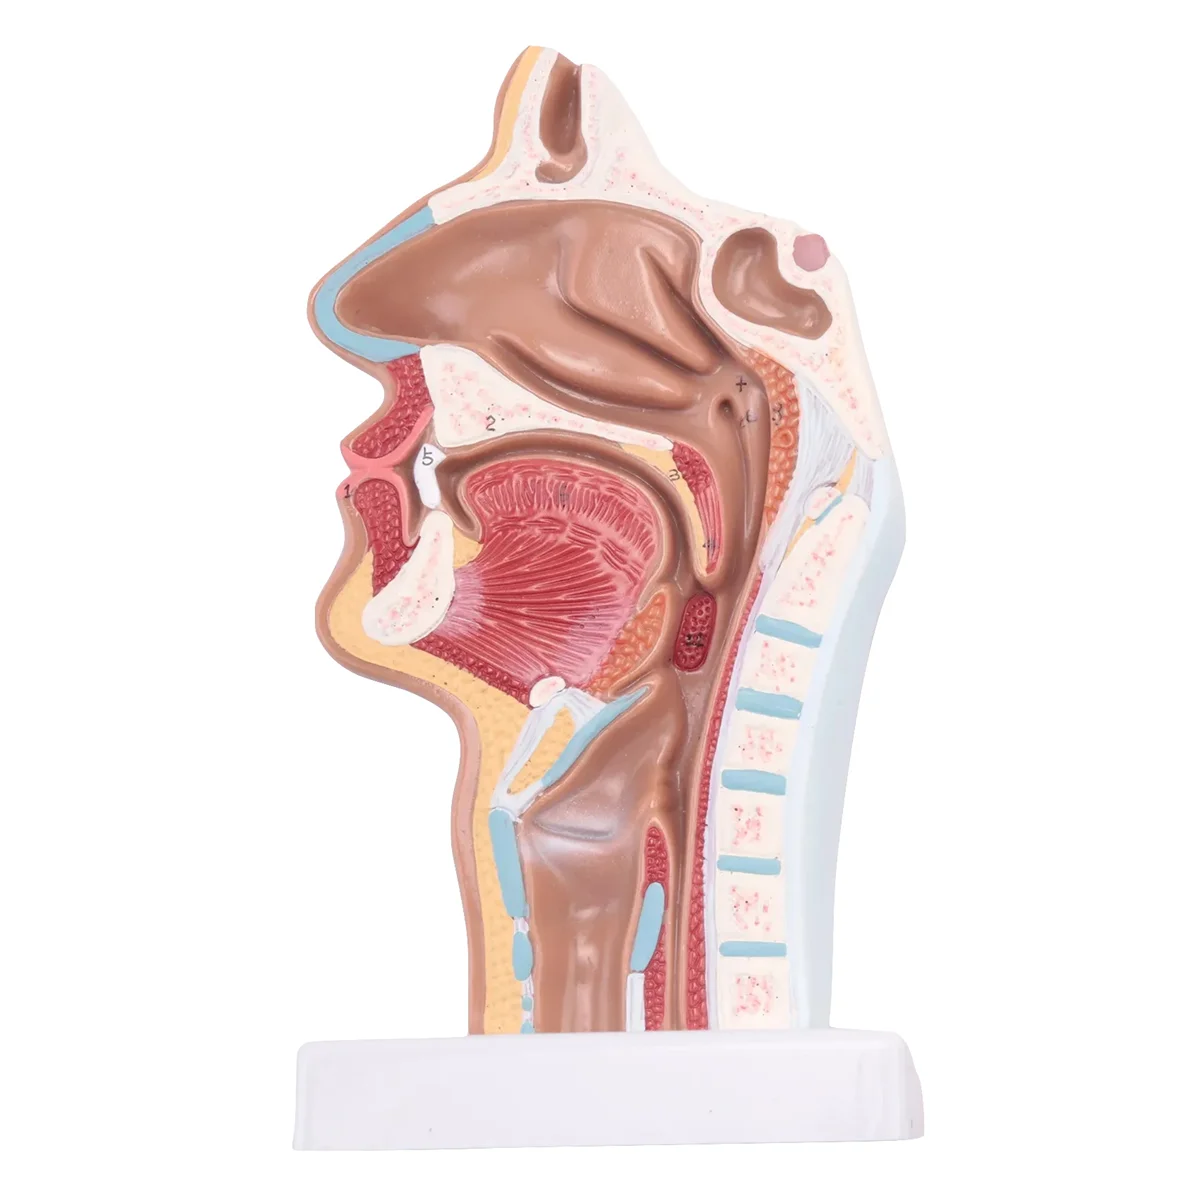 

Человеческая анатомическая носовая полость, модель анатомии горла для научных классов, учебы, демонстрационная модель для обучения